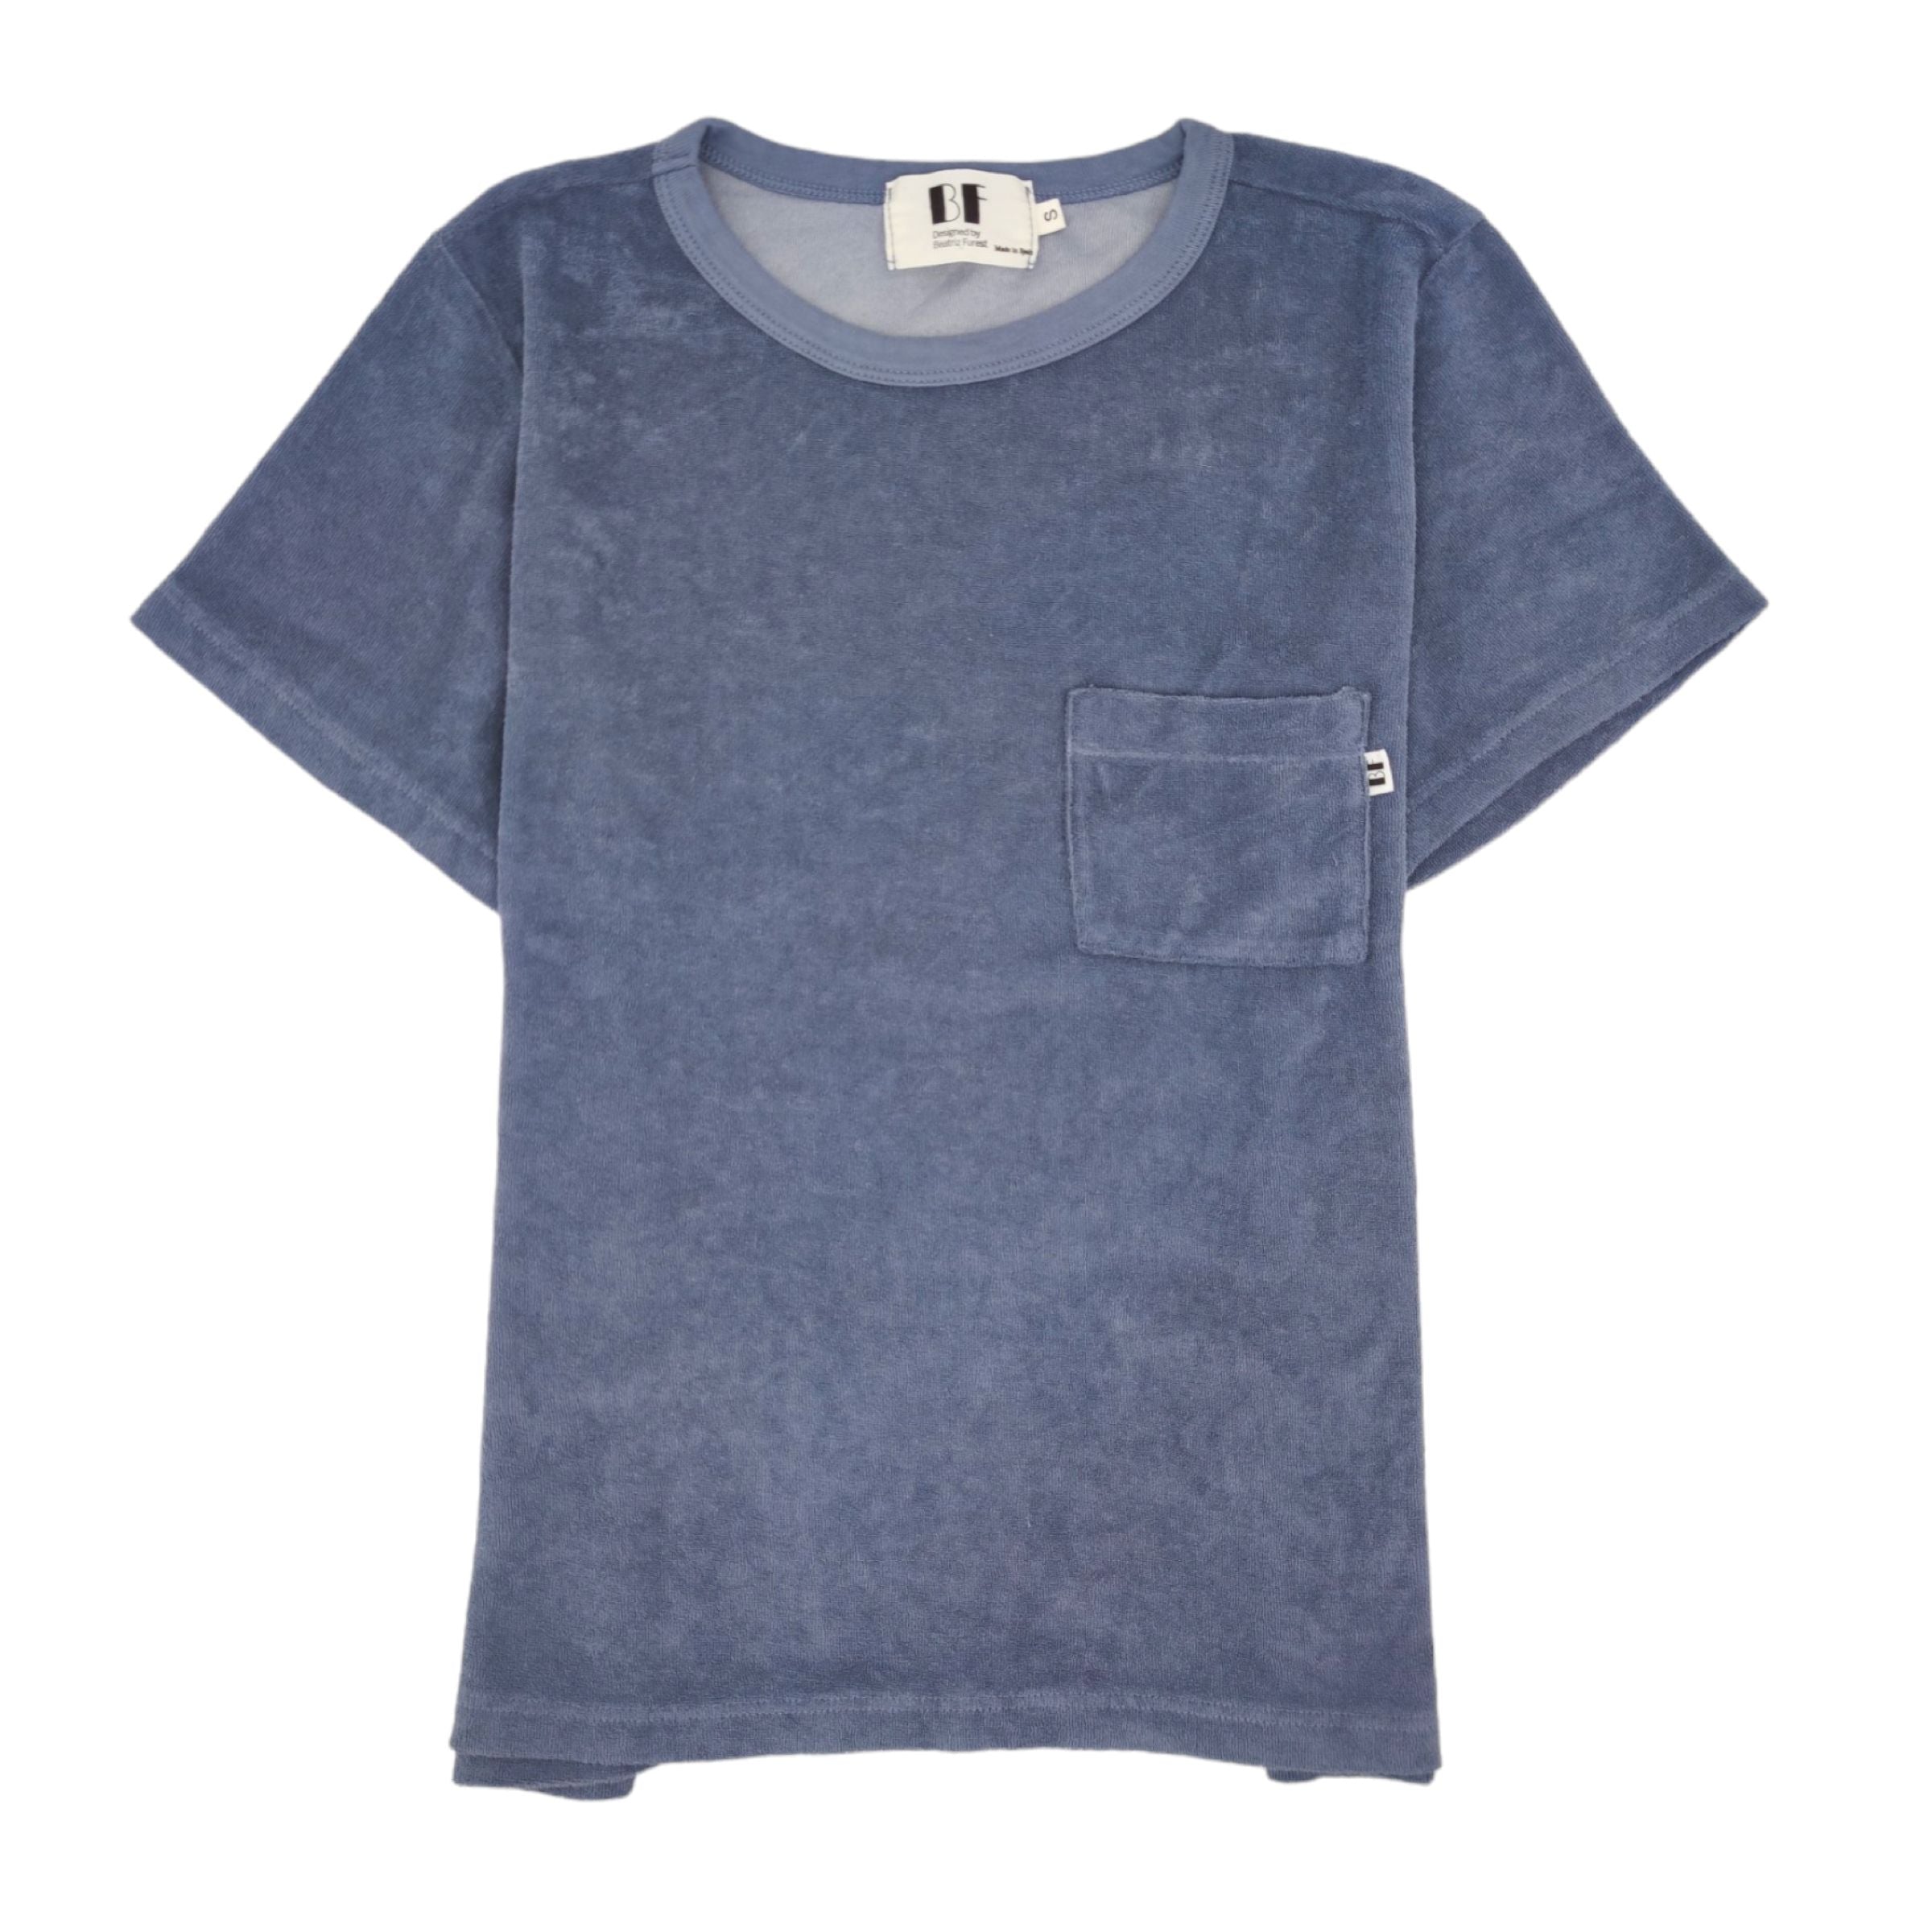 Women's Pocket T-shirt Blue Grey 